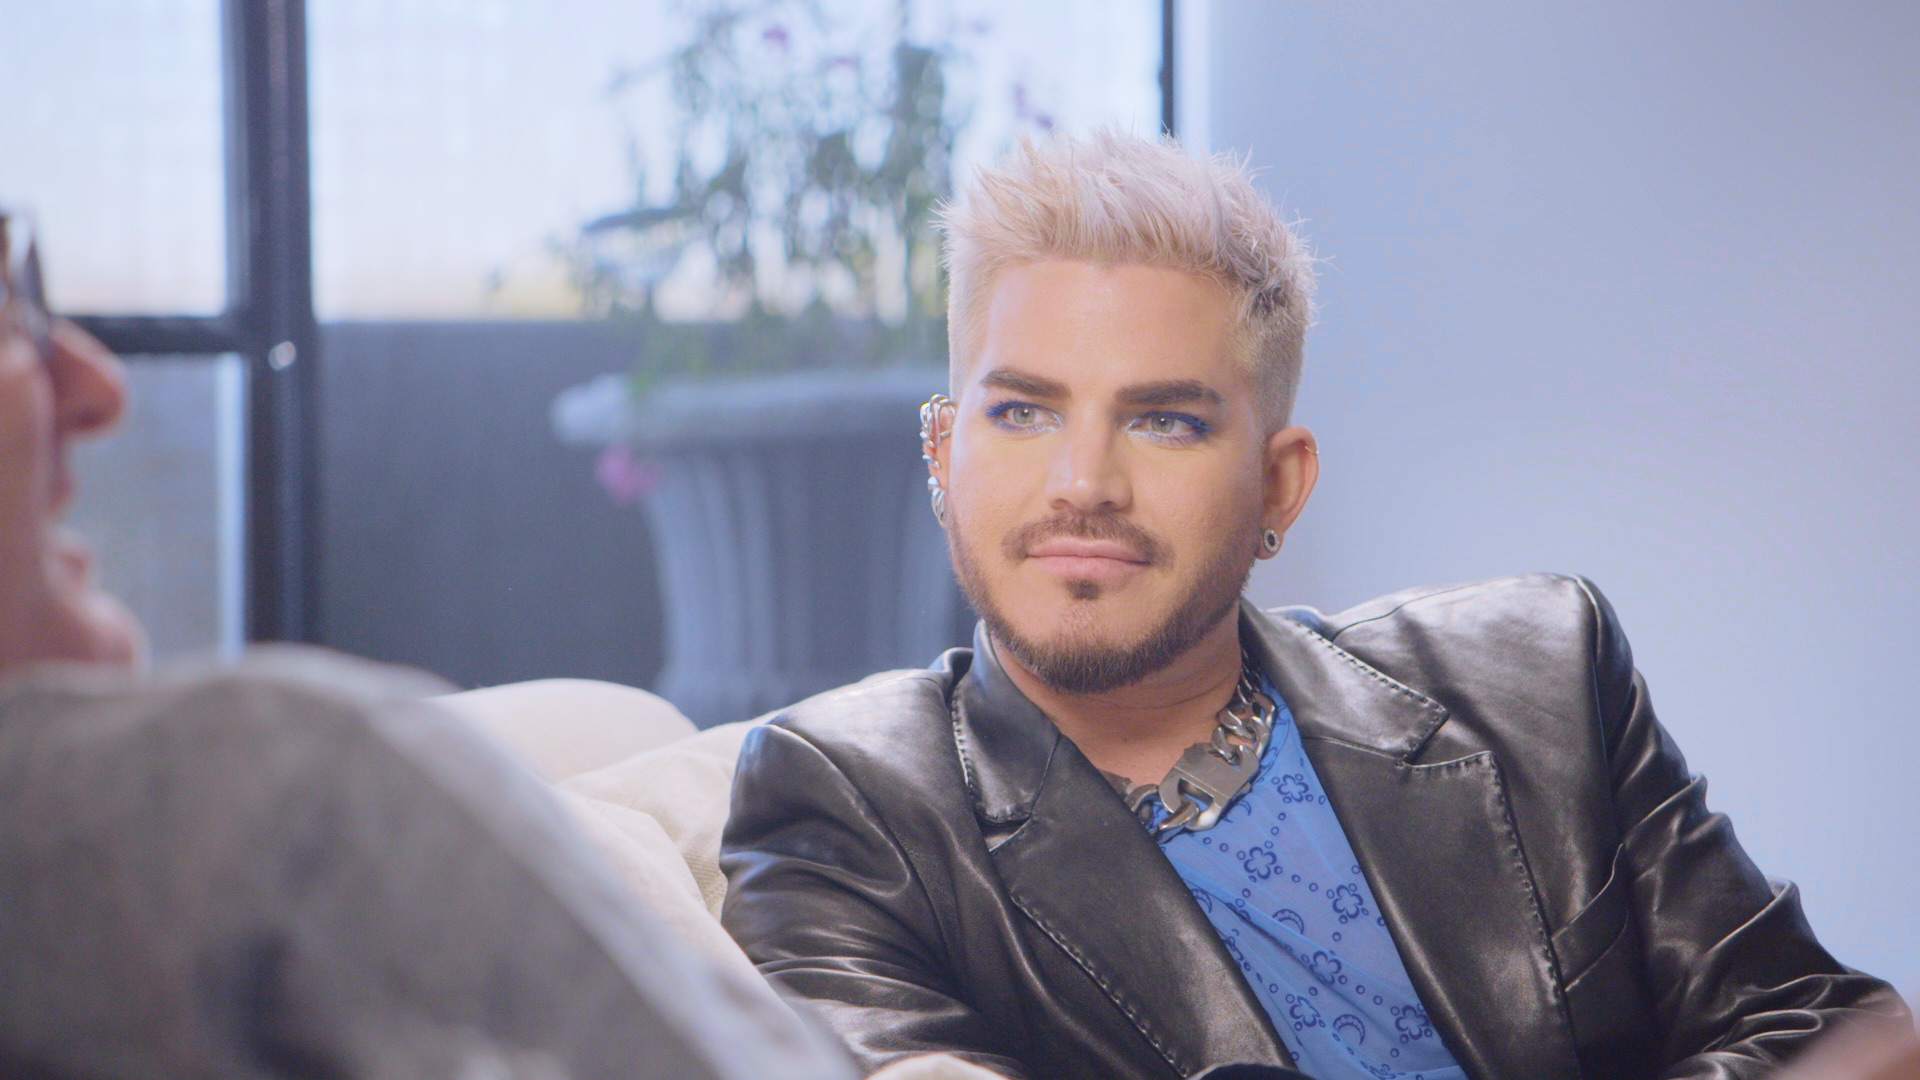 Adam se convierte en documentalista mientras conversa con estrellas del pop LGBTQ+